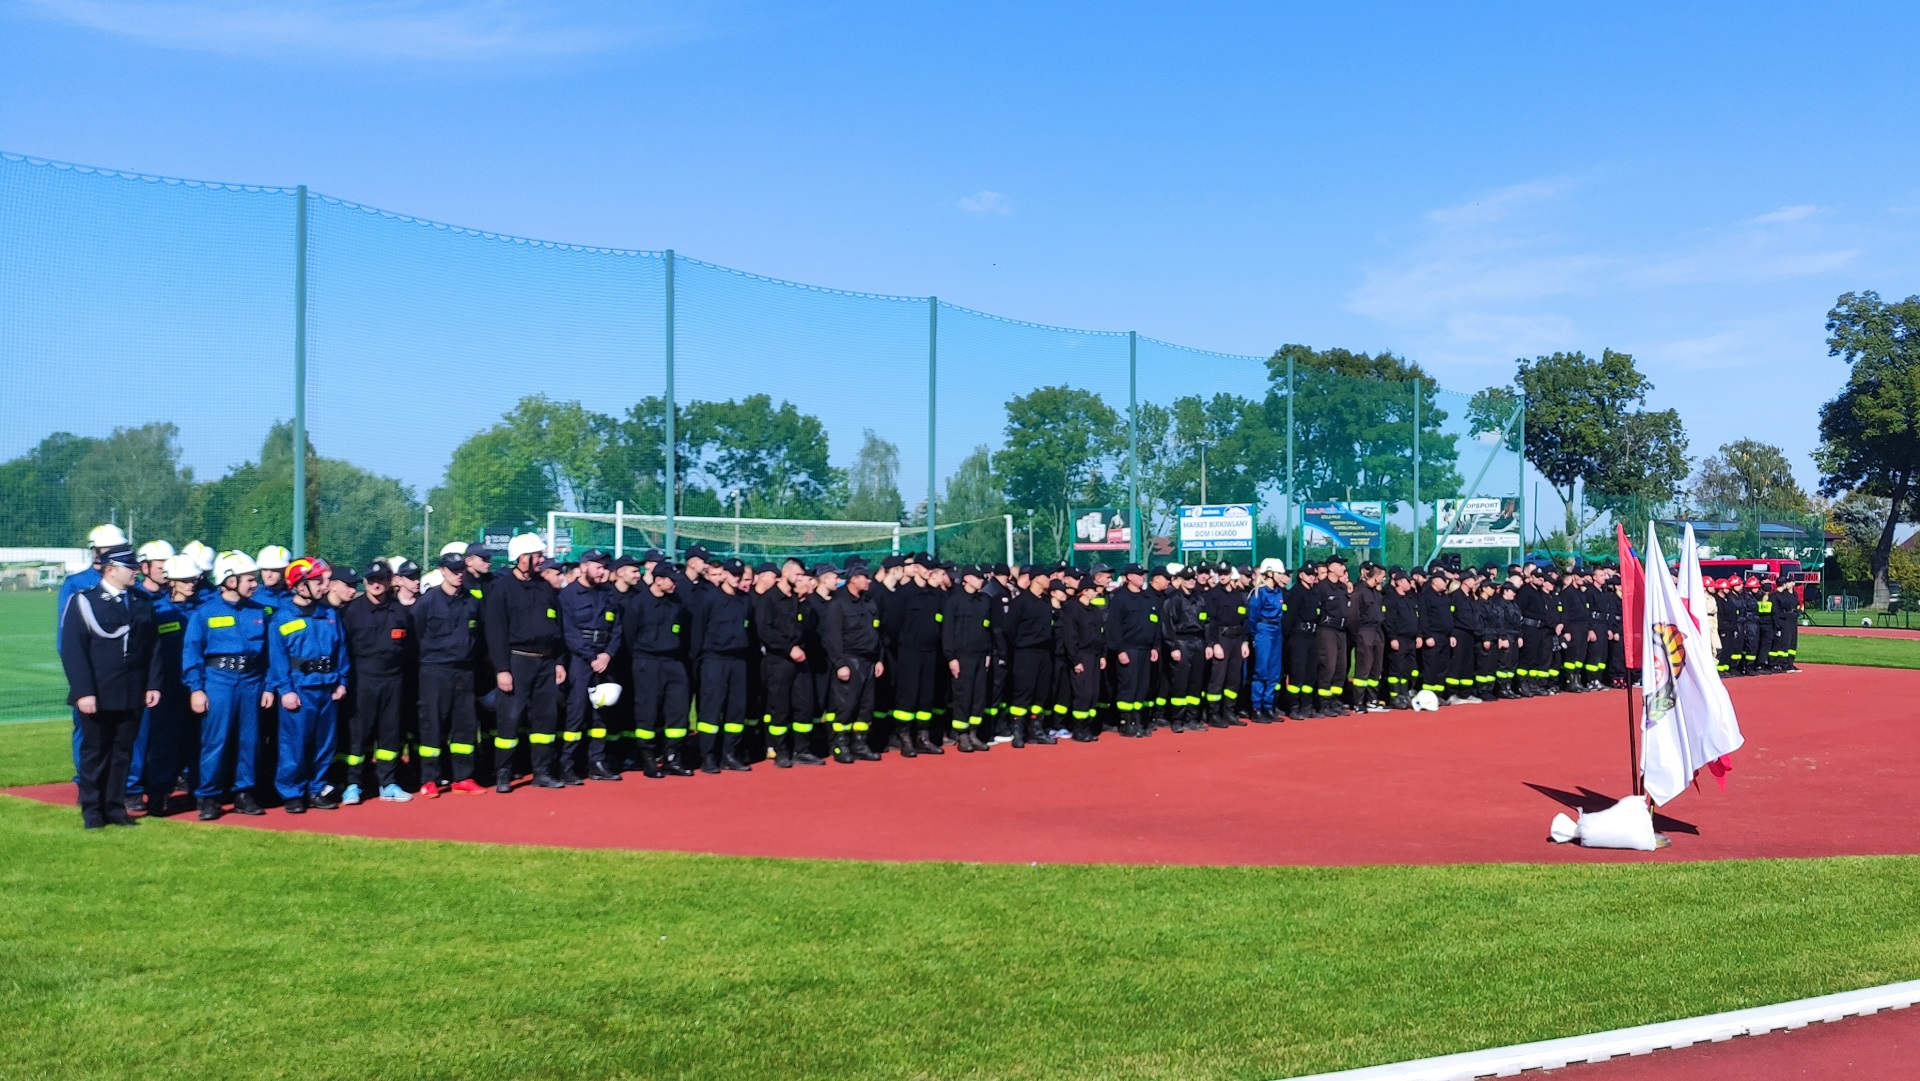 Zdjęcie grupowe wszystkich strażaków poszczególnych drużyn w mundurach bojowych. Uczestnicy stoją w szeregu. W tle płyta boiska stadionu miejskiego w Sokołowie Podlaskim